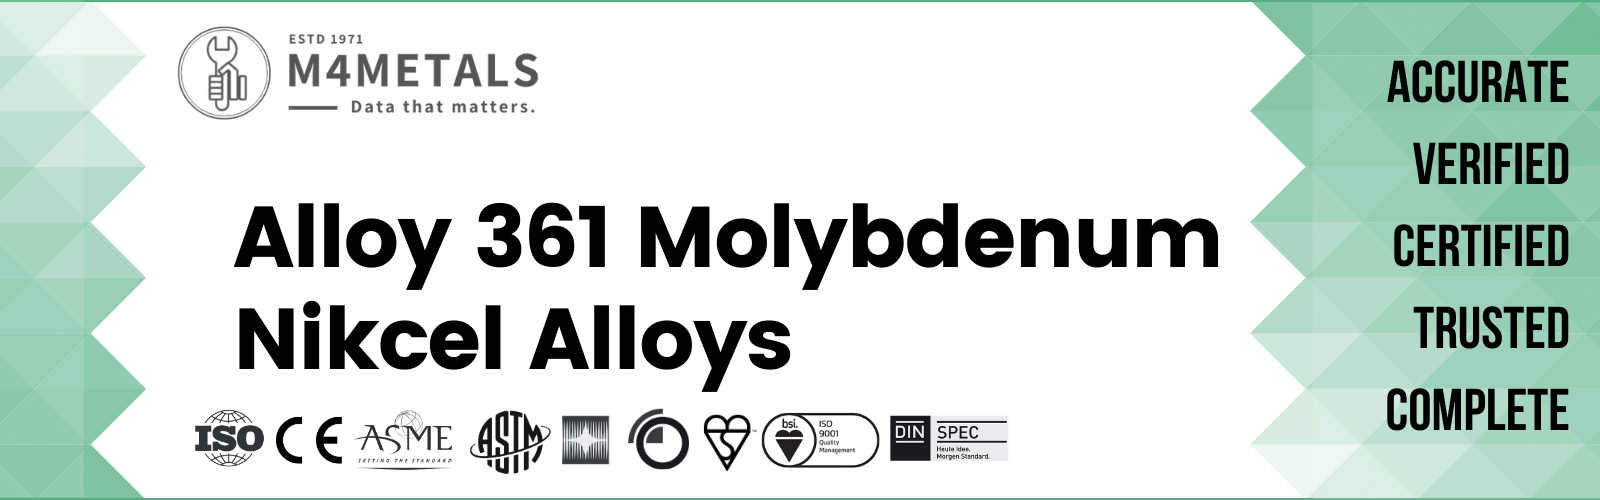 Molybdenum Alloy 361